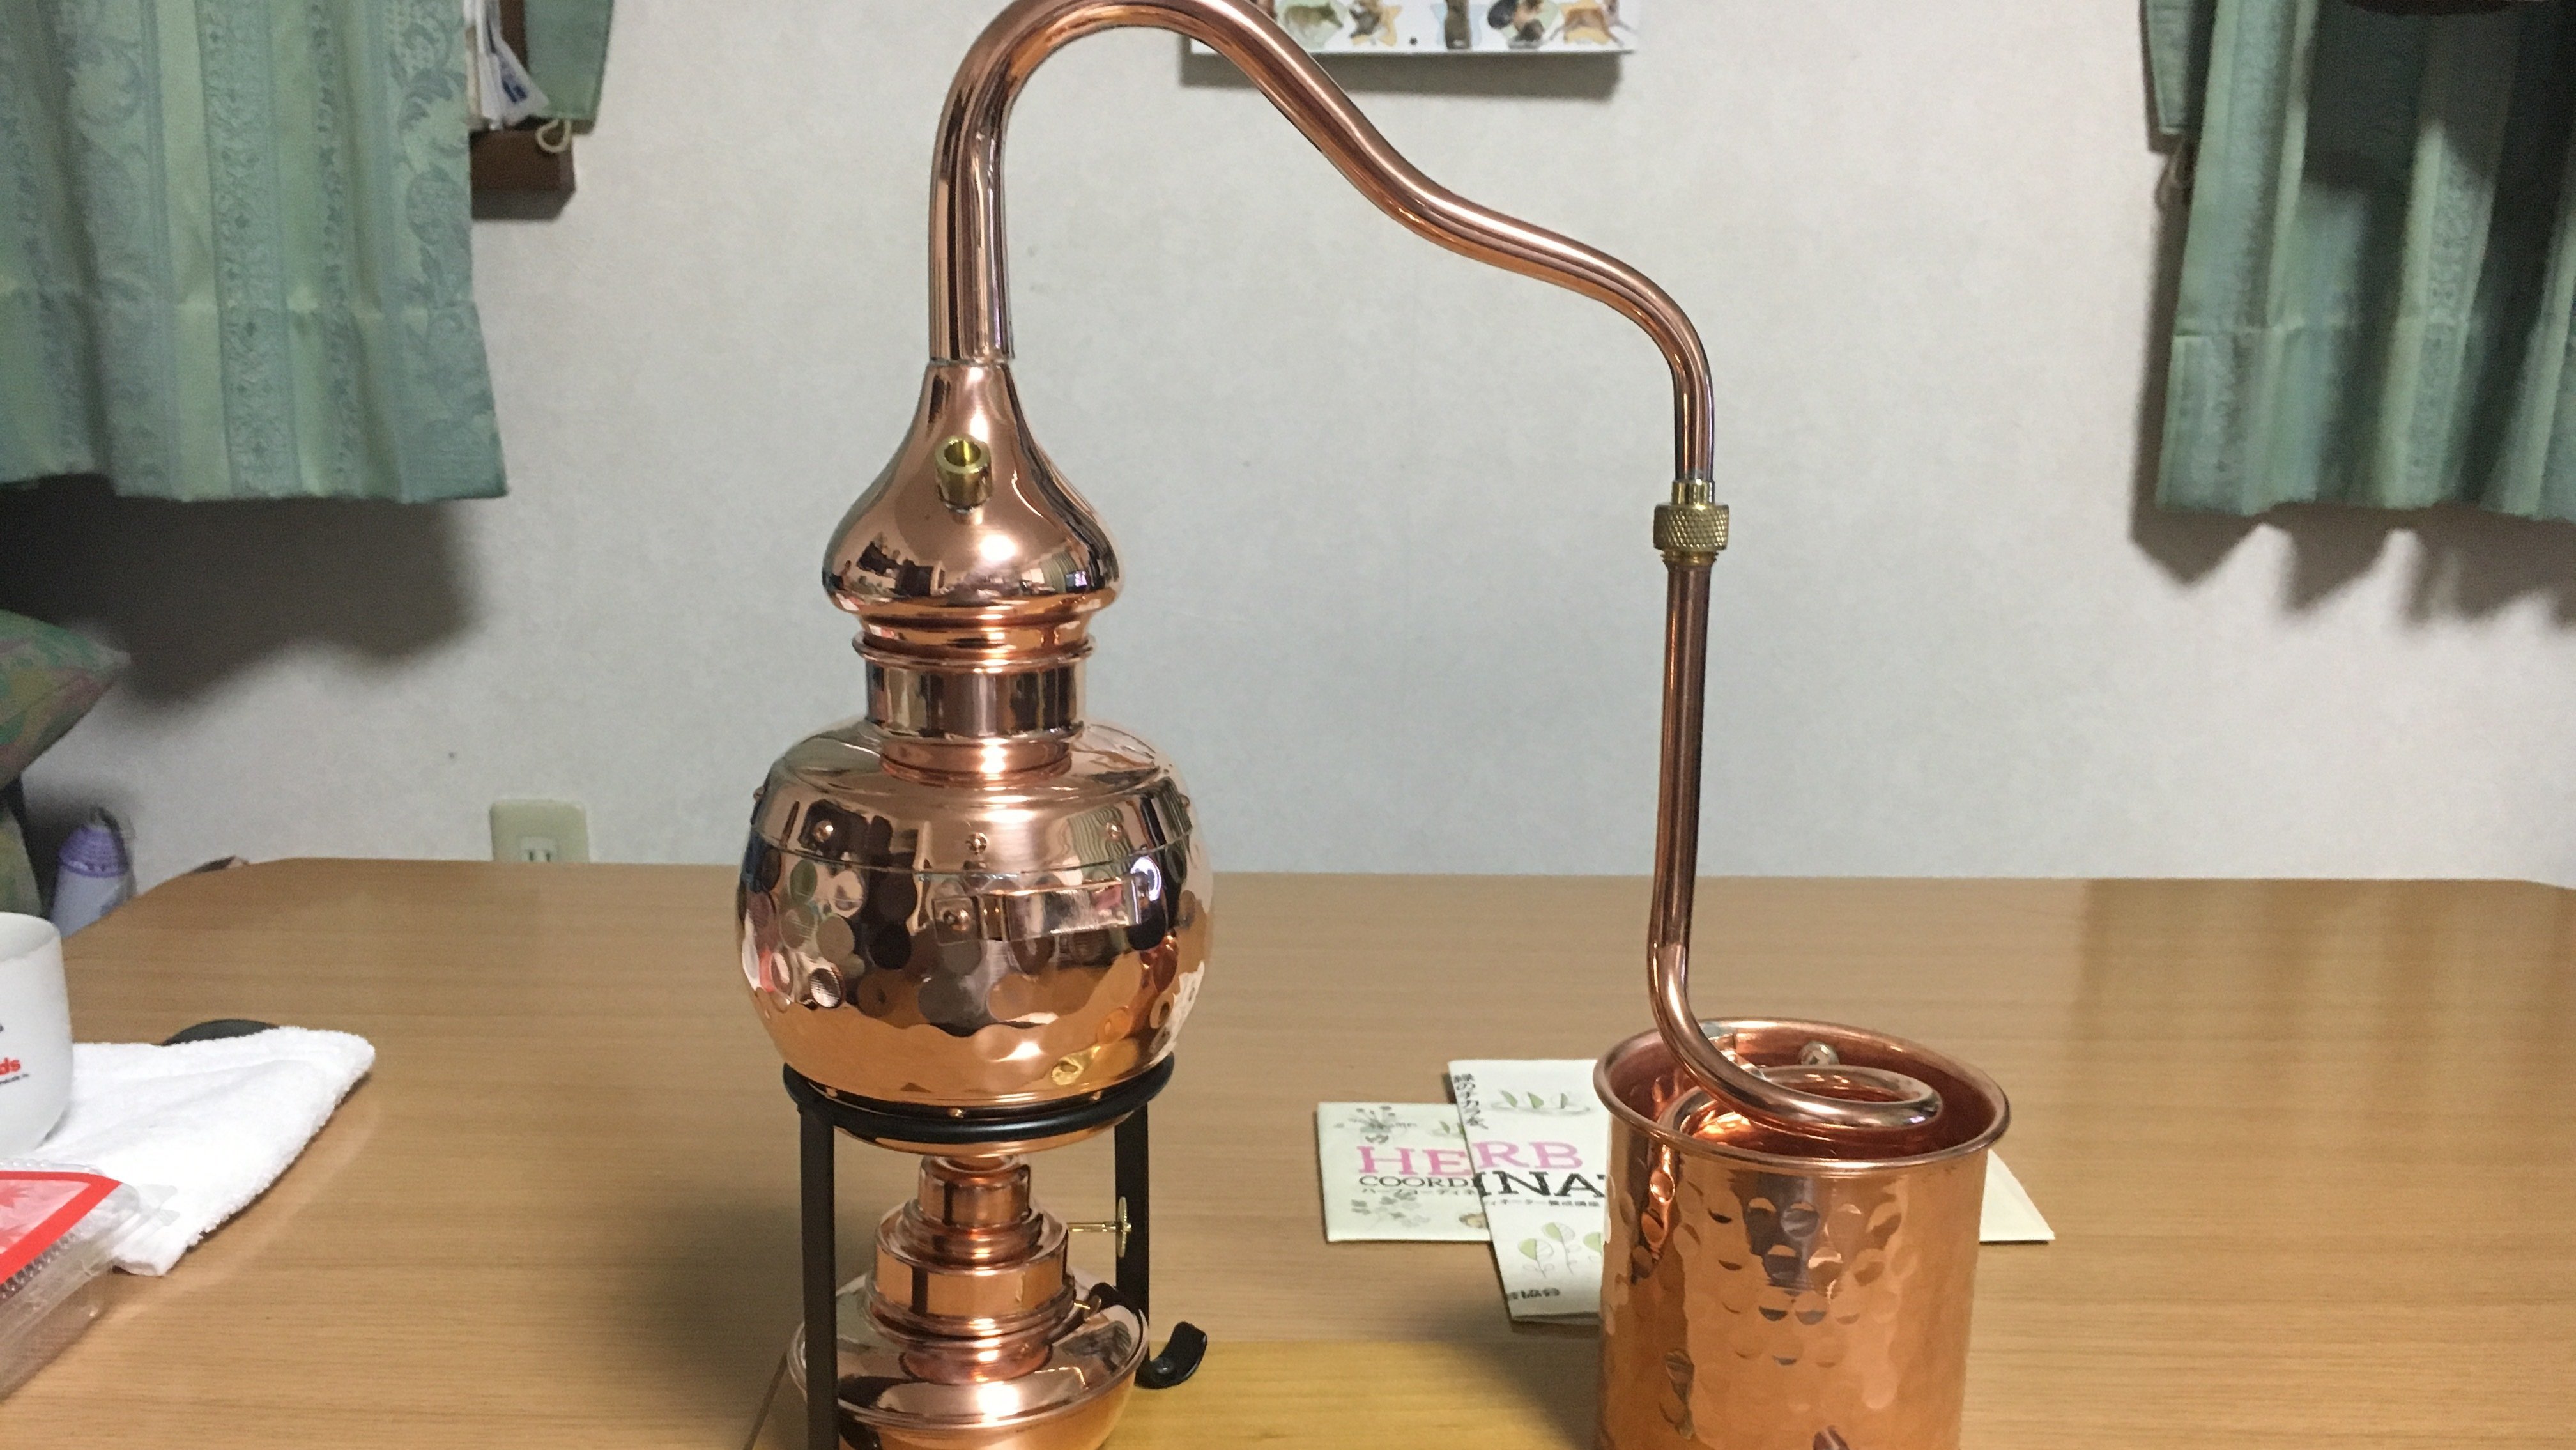 アランビック3.0 銅製蒸留器 おうちで手作り蒸留水 アロマ 精油 